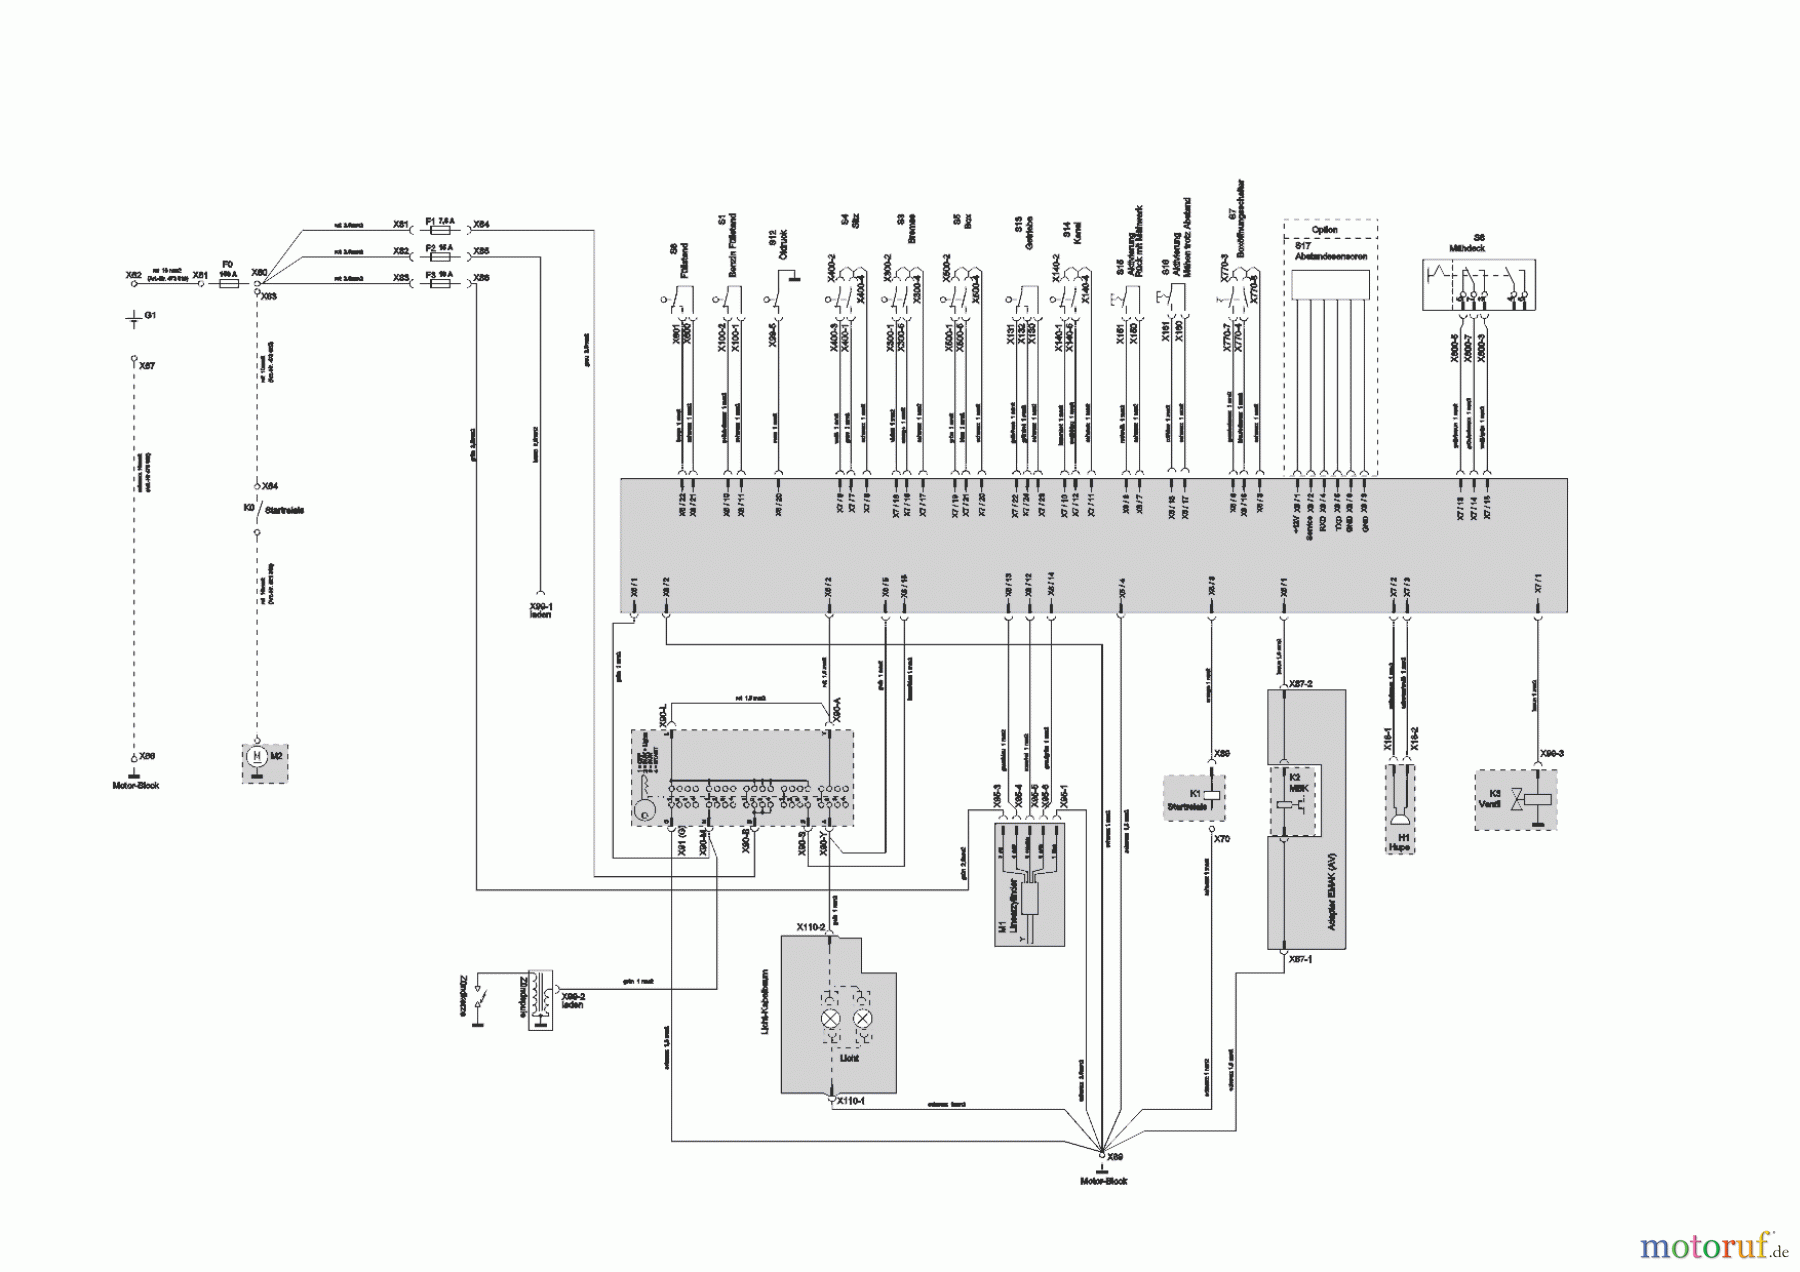  Powerline Gartentechnik Rasentraktor T20-105.4 HDE V2  ab 02/2019 Seite 11